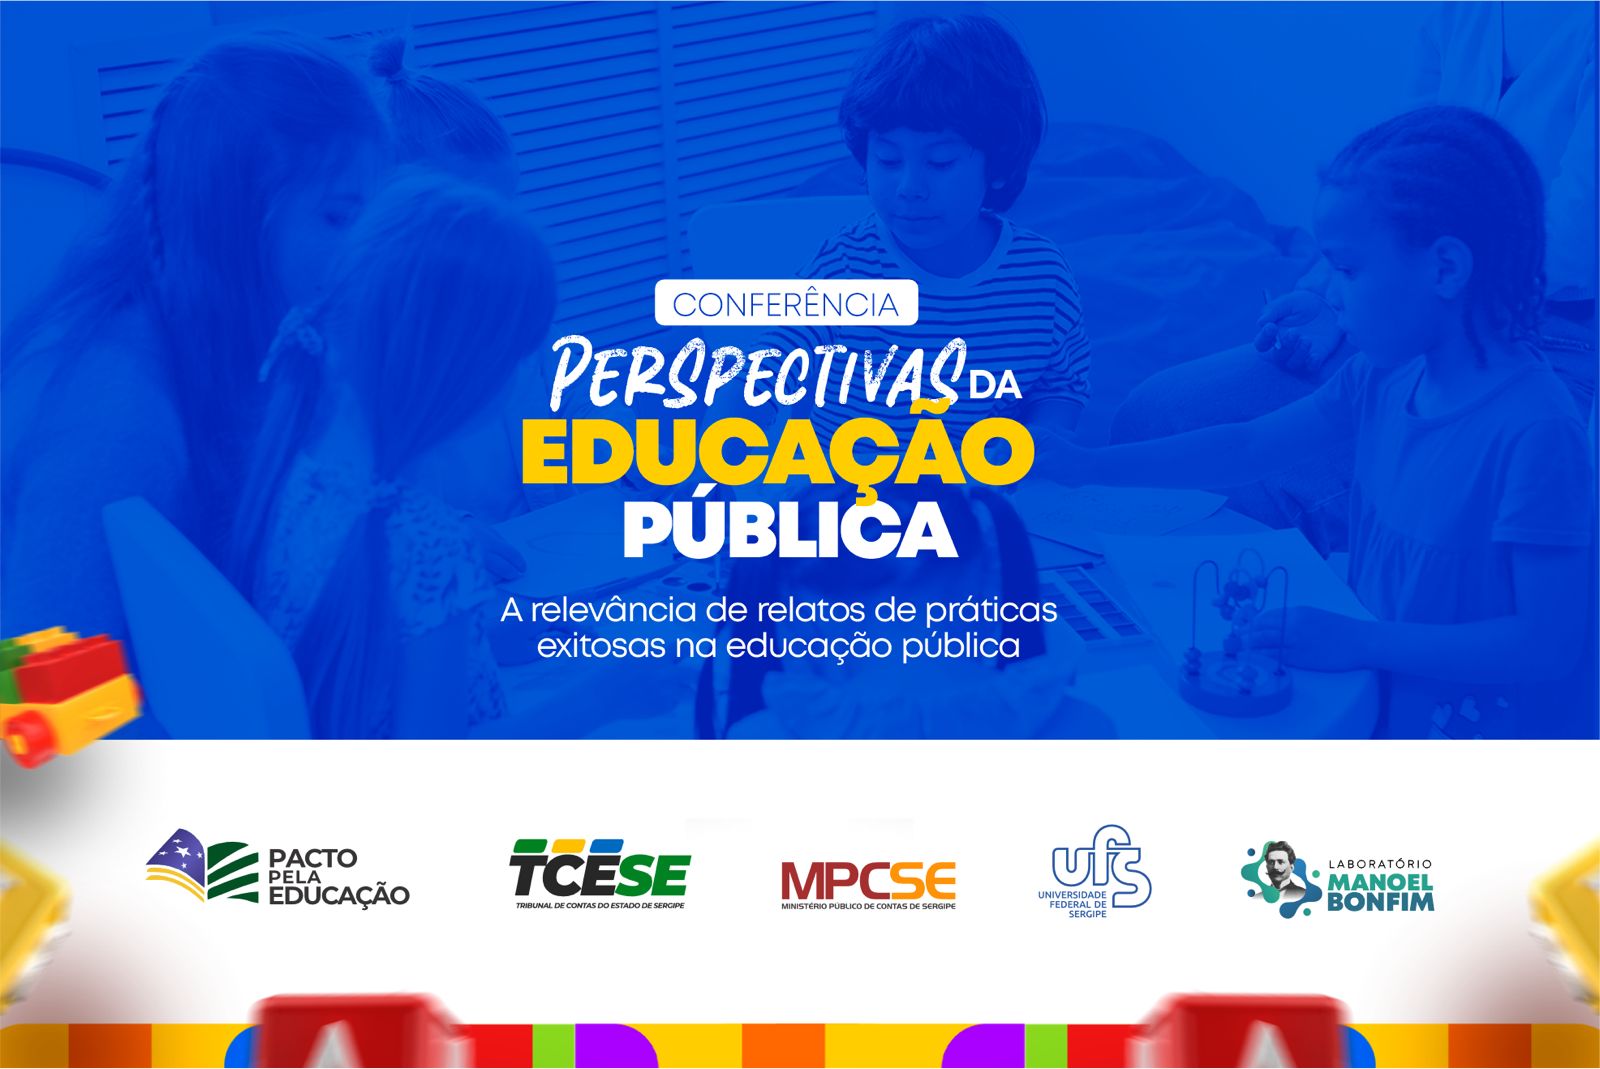 Boas práticas da educação básica sergipana serão discutidas em evento no TCE